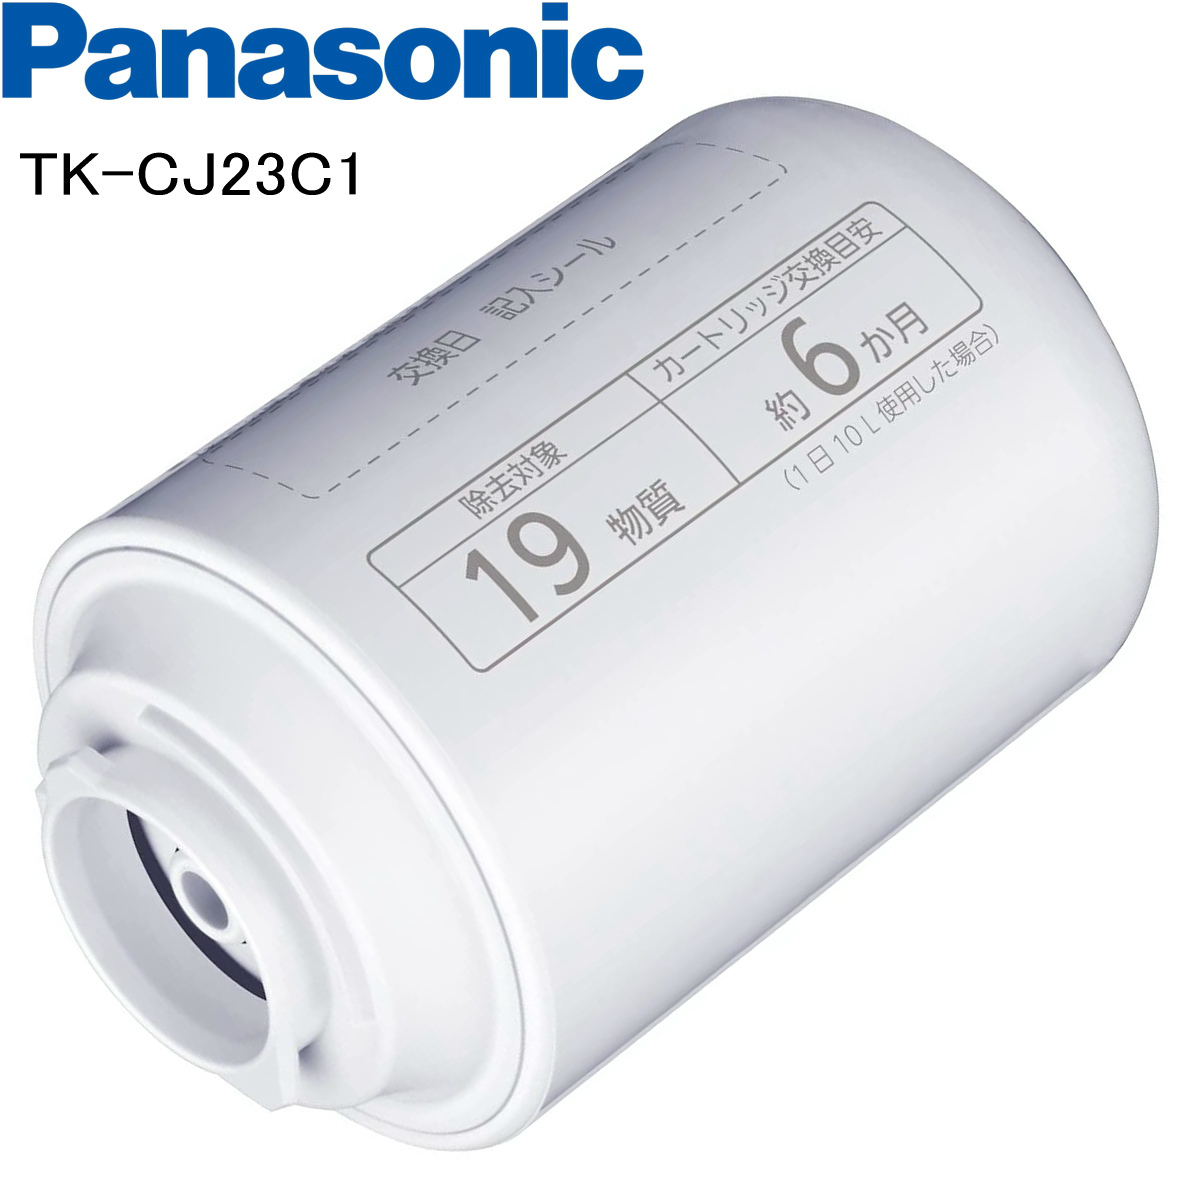 Panasonic TK-CJ23C1